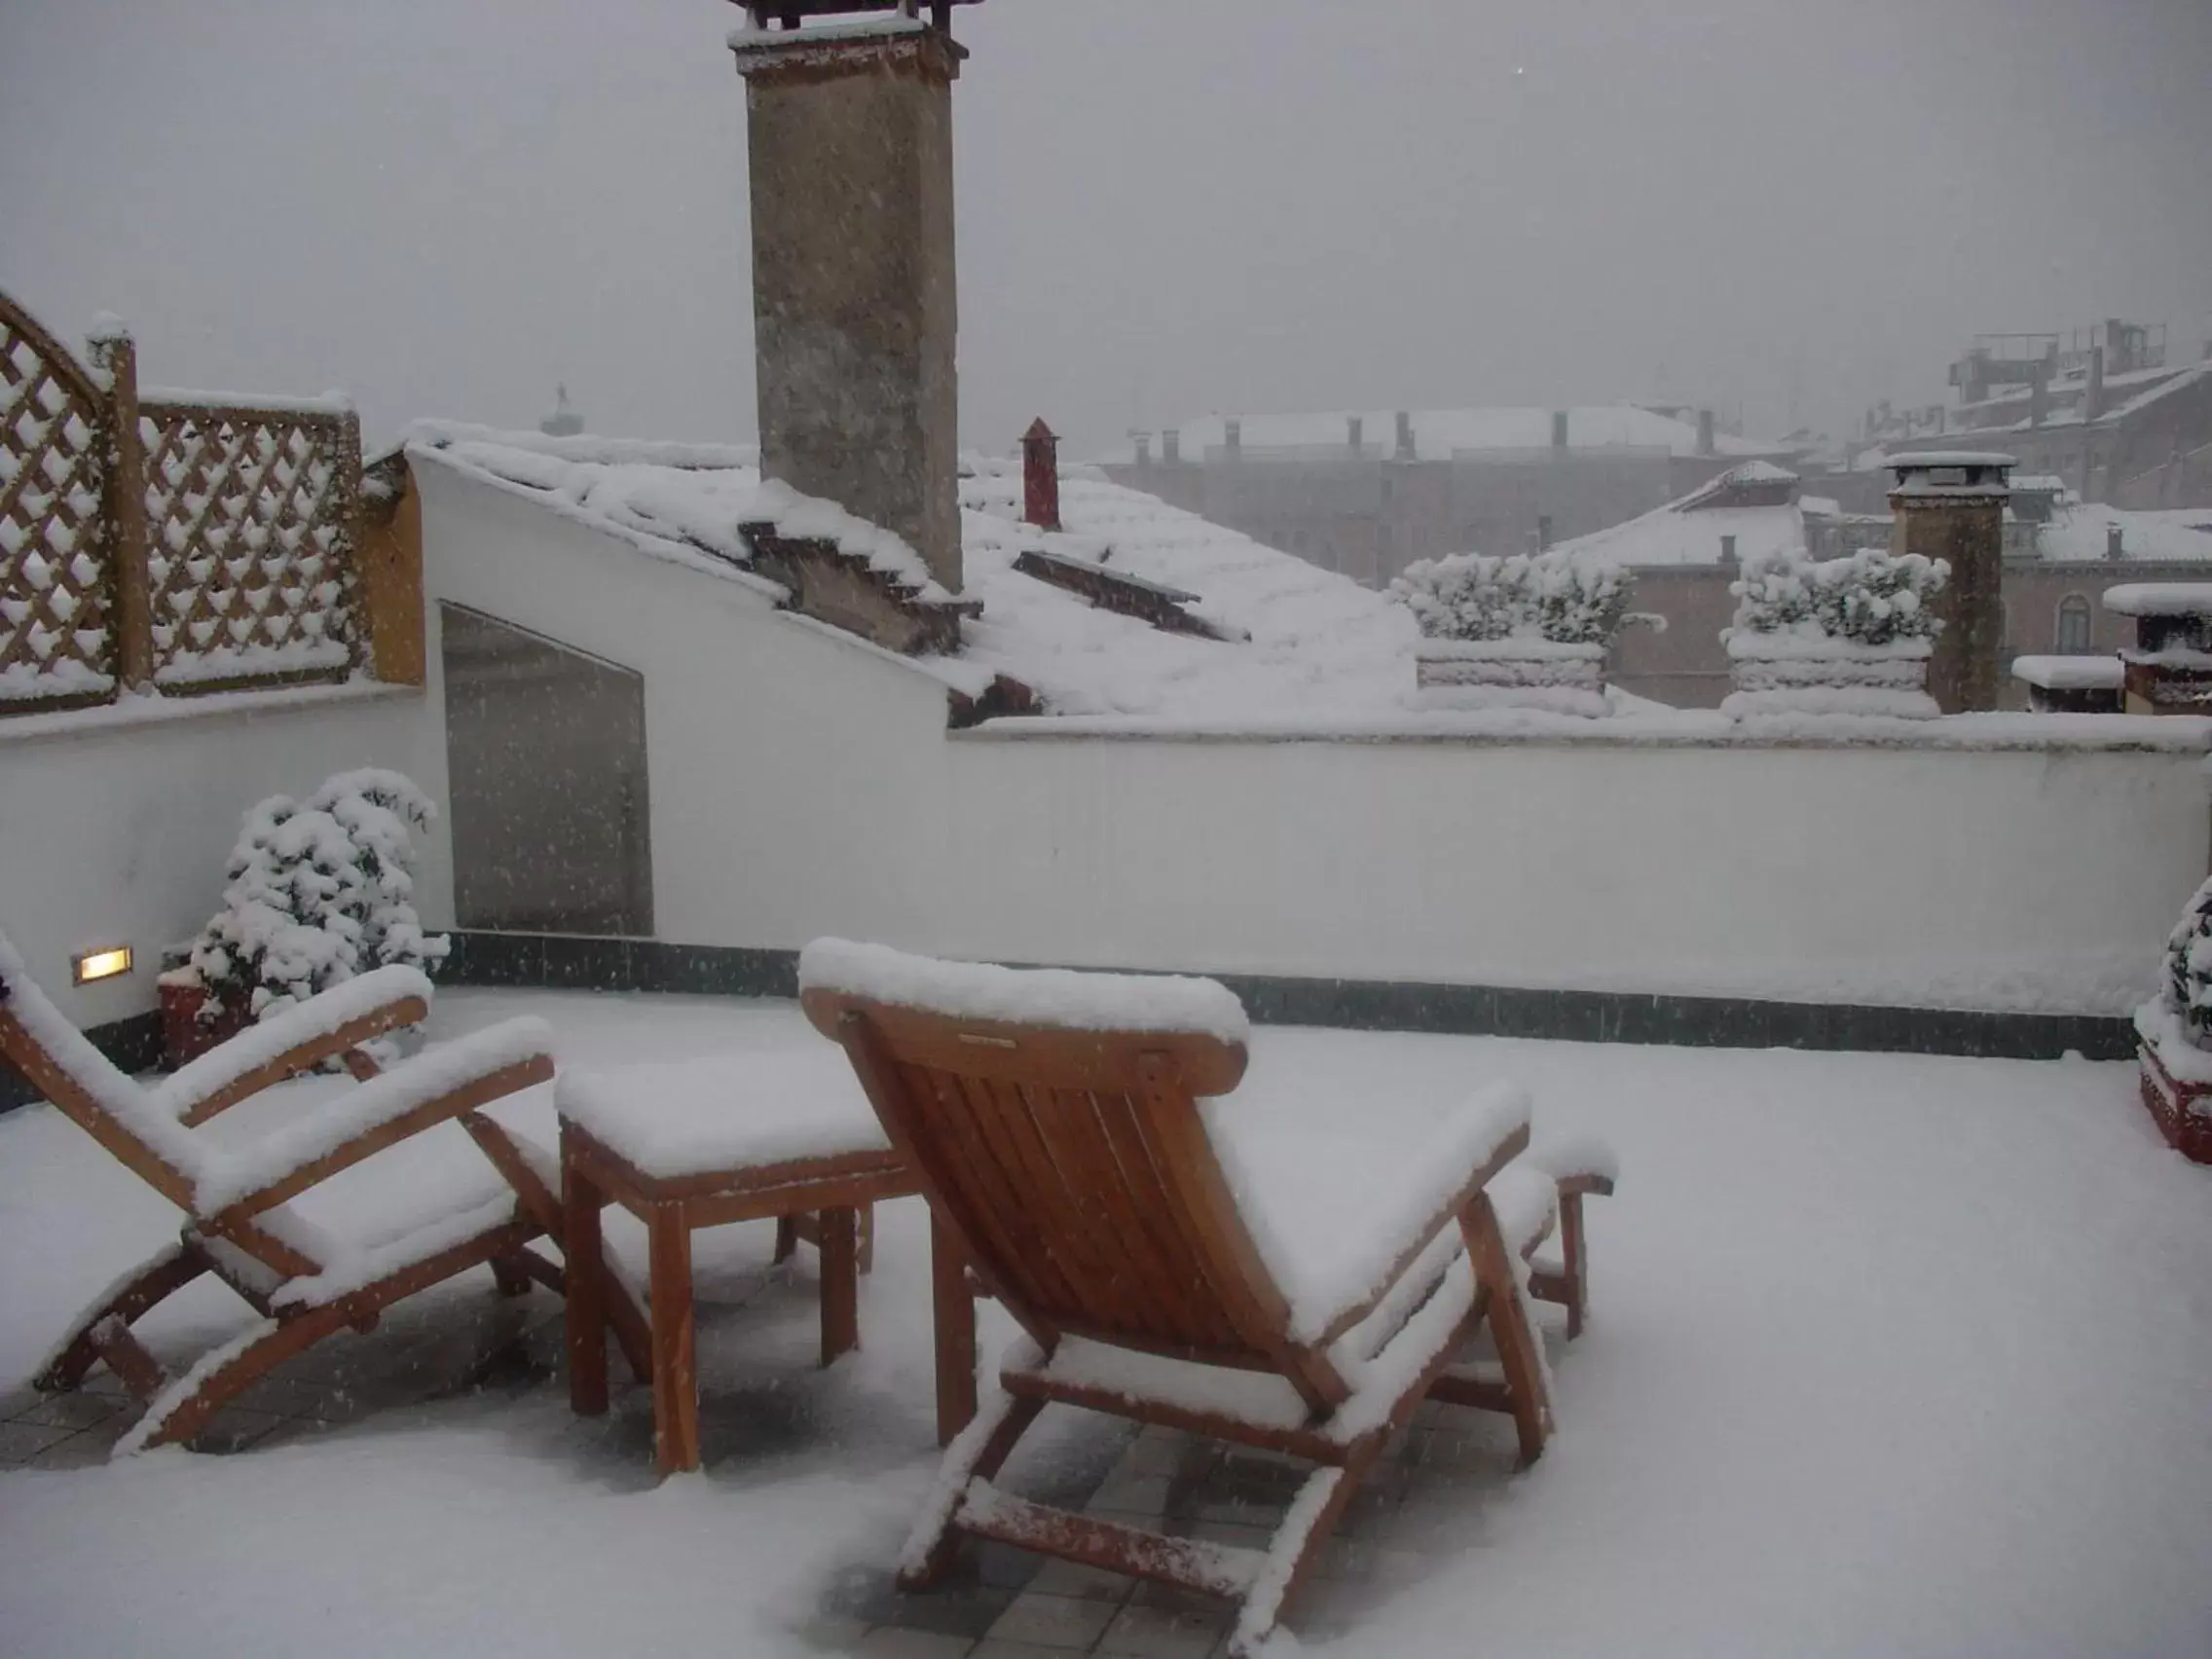 Winter in Ca' Angeli